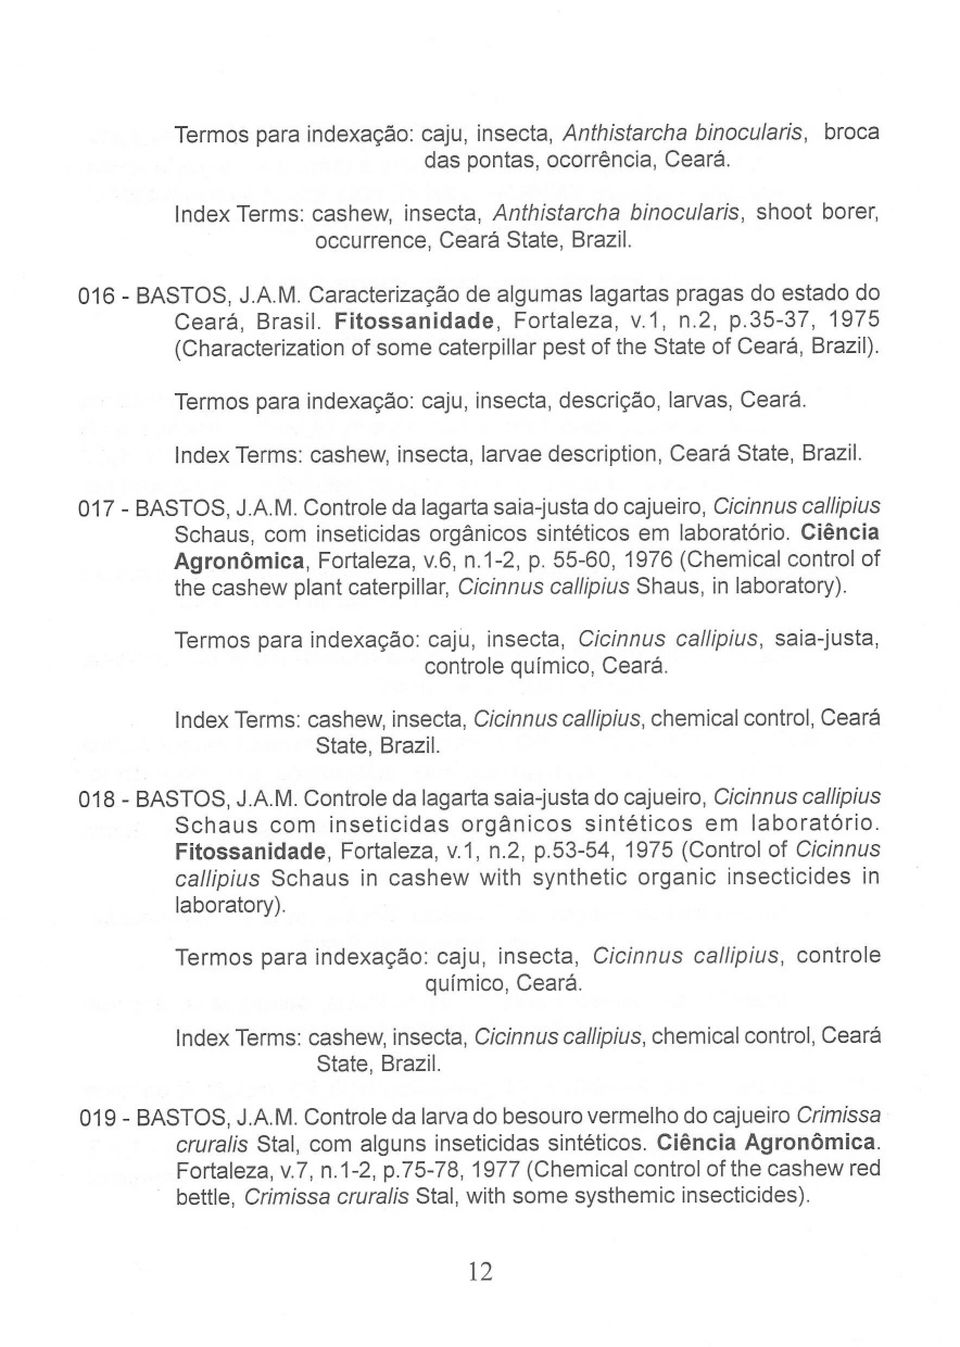 Fitossanidade, Fortaleza, v.1, n.2, p.35-37, 1975 (Characterization of some caterpillar pest of the State of Ceará, Brazil). Termos para indexação: caju, insecta, descrição, larvas, Ceará.